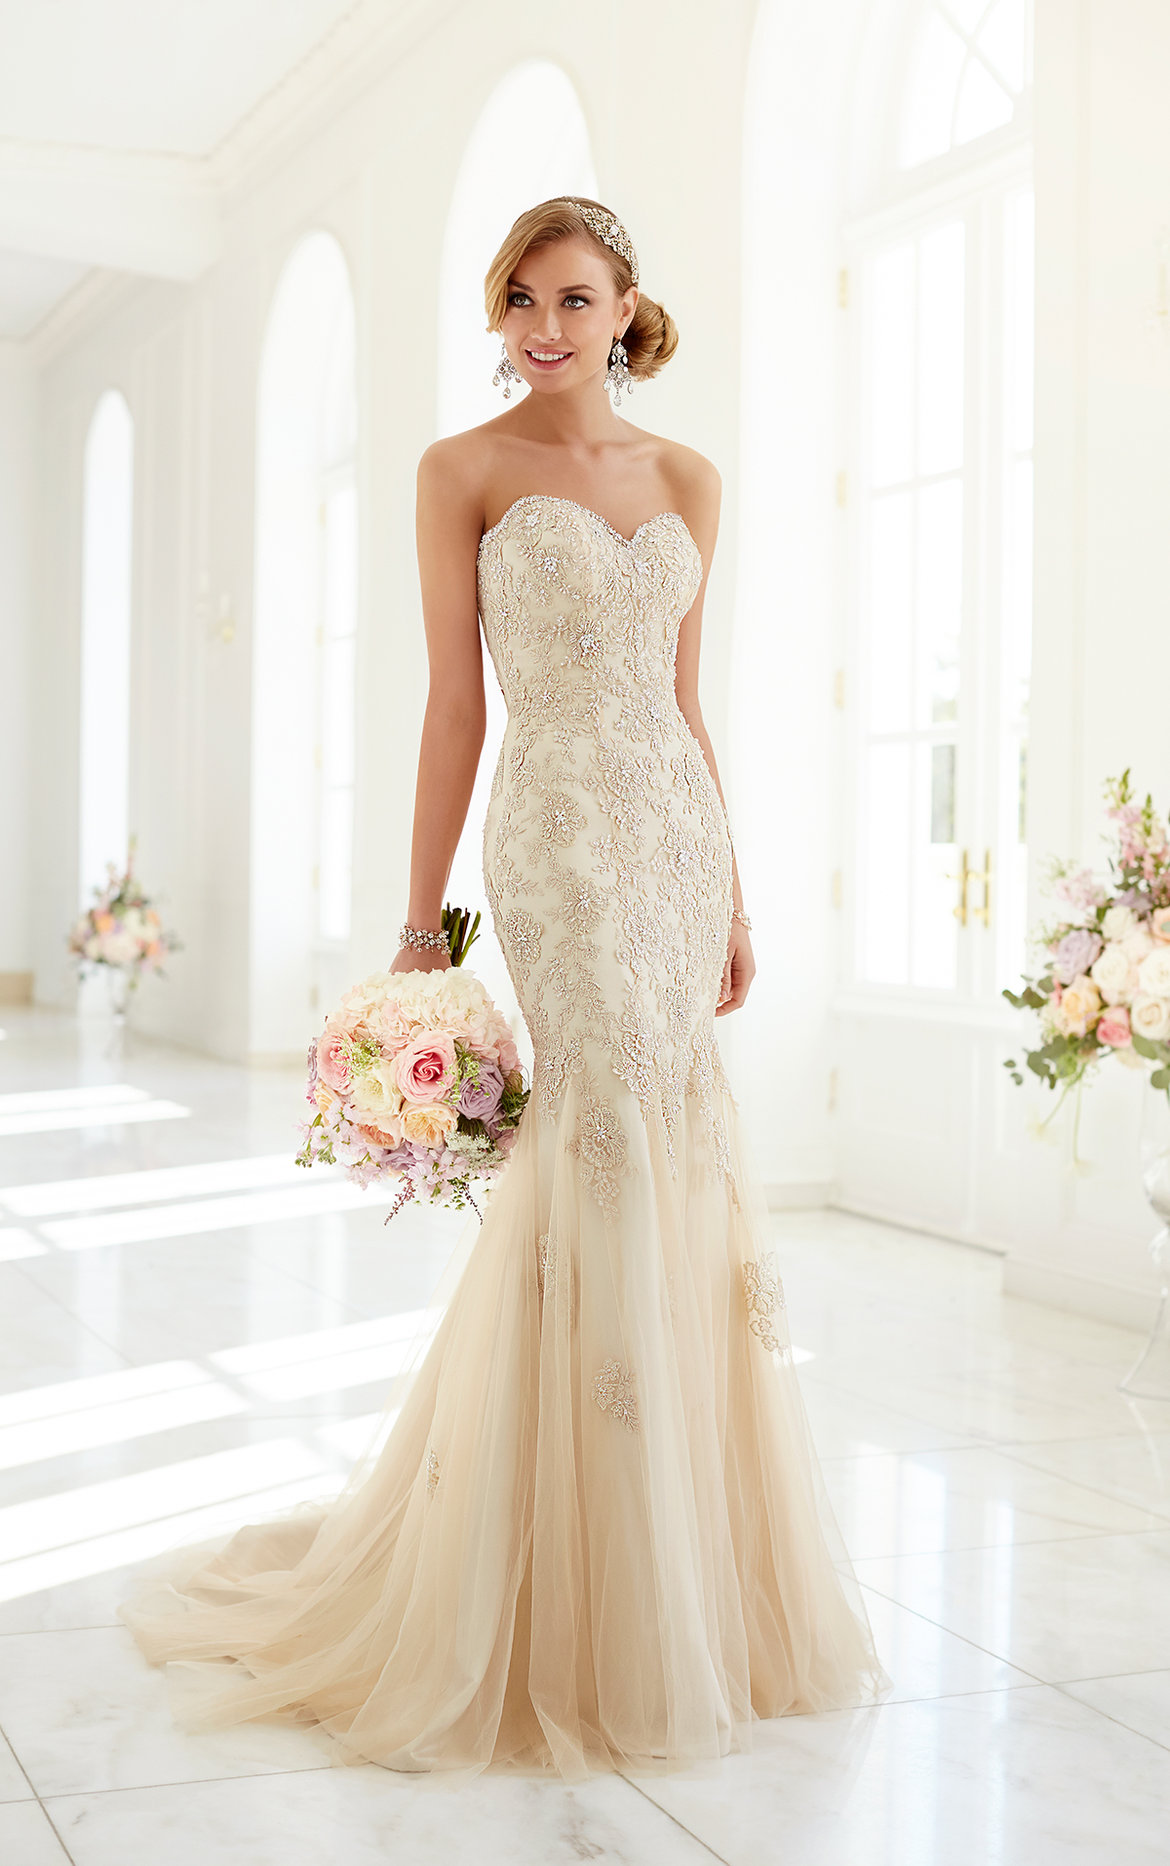 stella york wedding gown style 5986